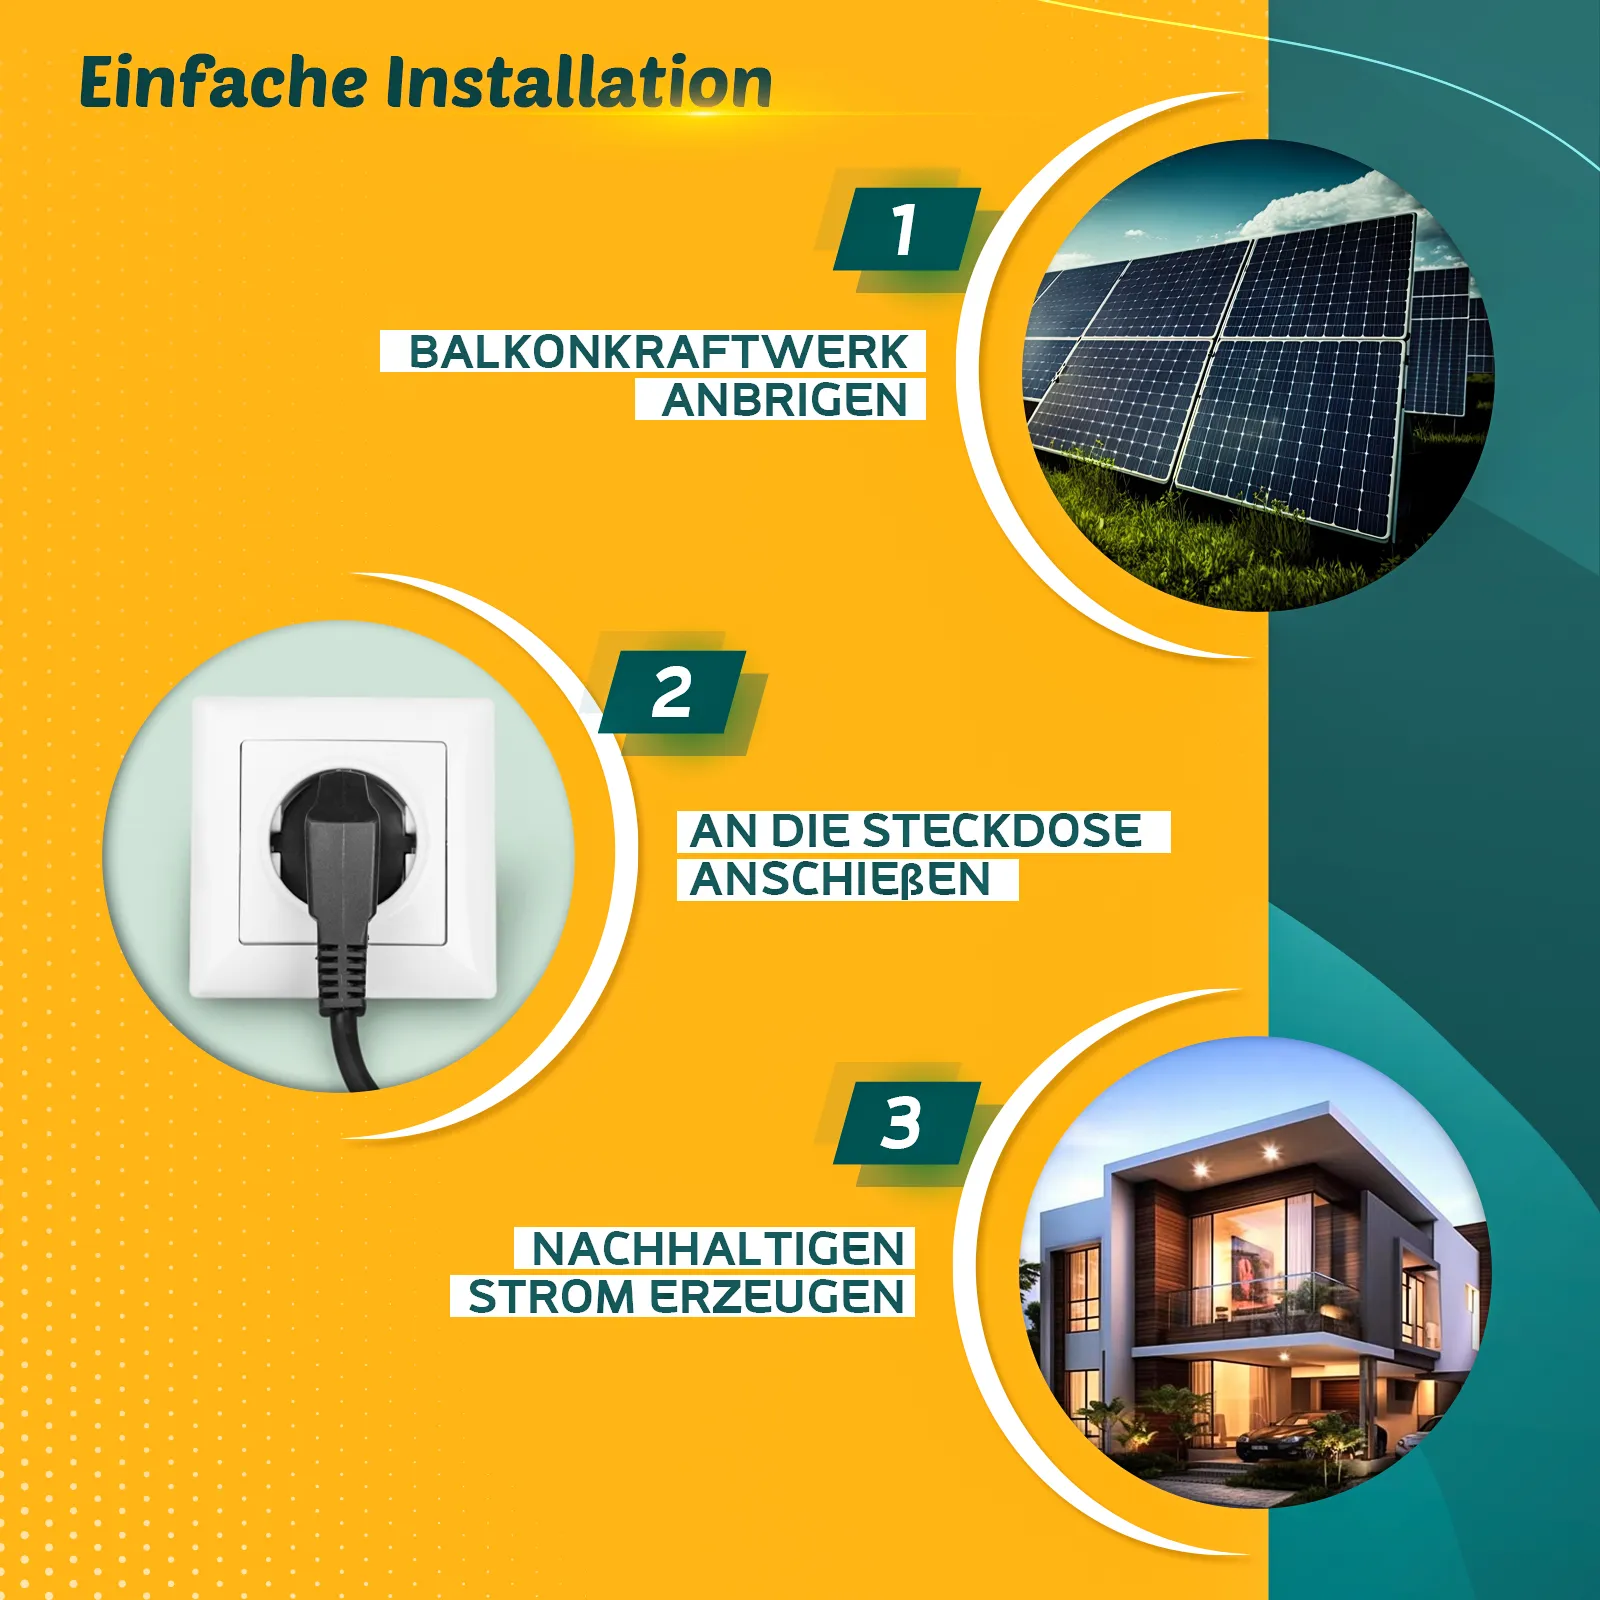 760W Balkonkraftwerk Komplettset inkl. 380W Solarmodule, Neu Generation  Deye 800W WIFI Wechselrichter mit Relais, Schukostecker - Enprove Solar GmbH